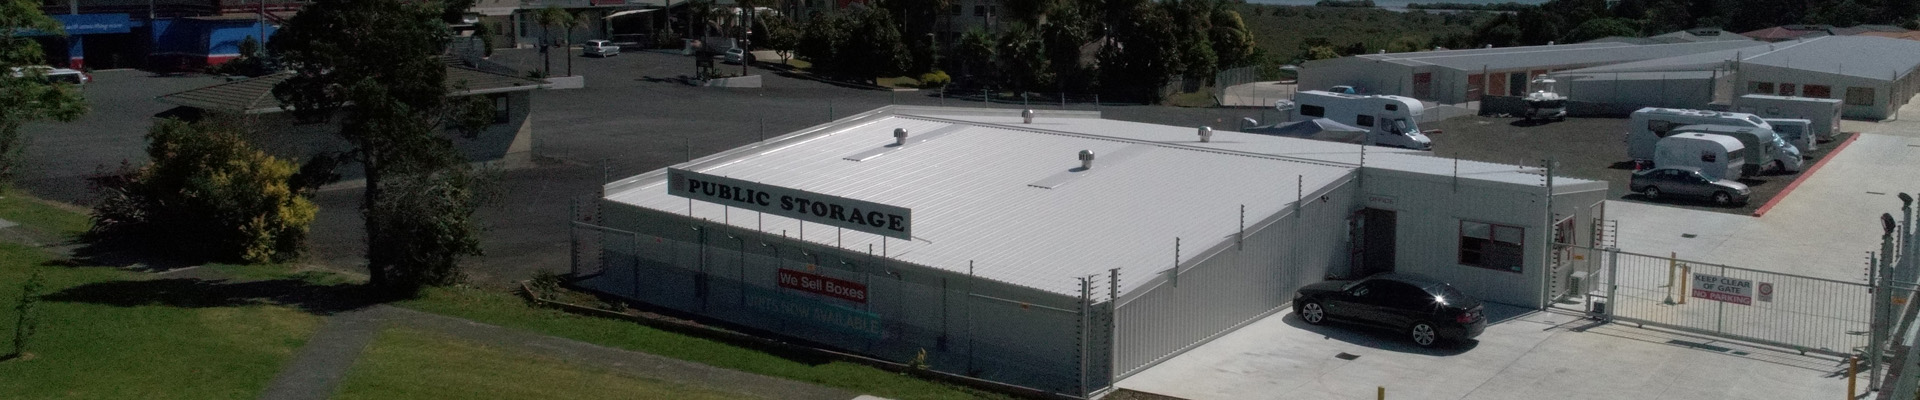 Public Storage Whangarei